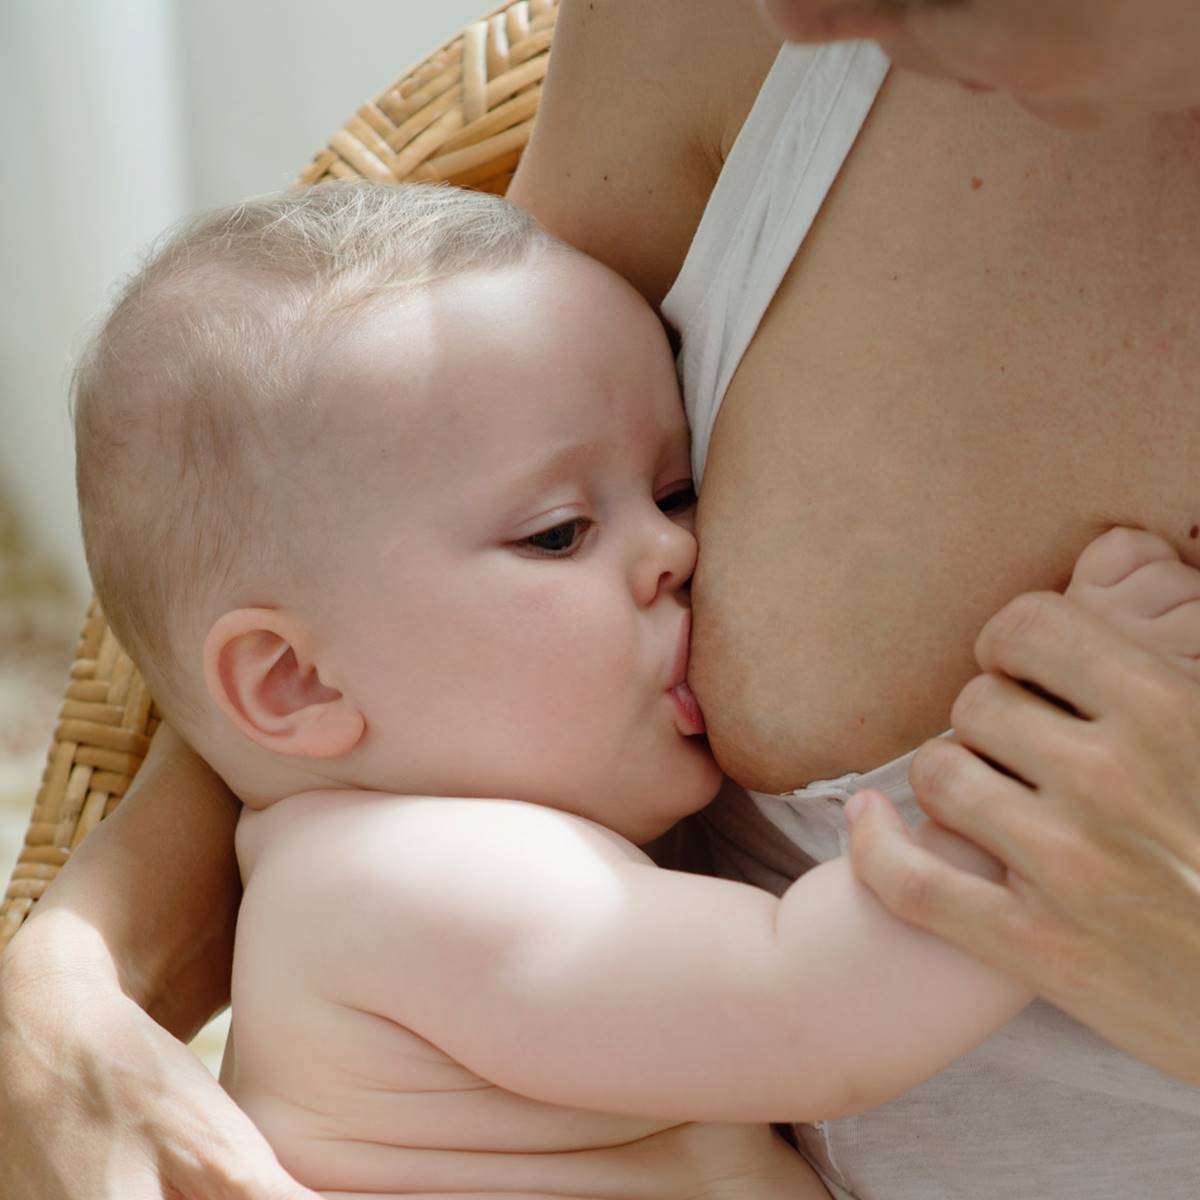 La lactancia materna es la forma más ecológica y segura de alimentar al bebé